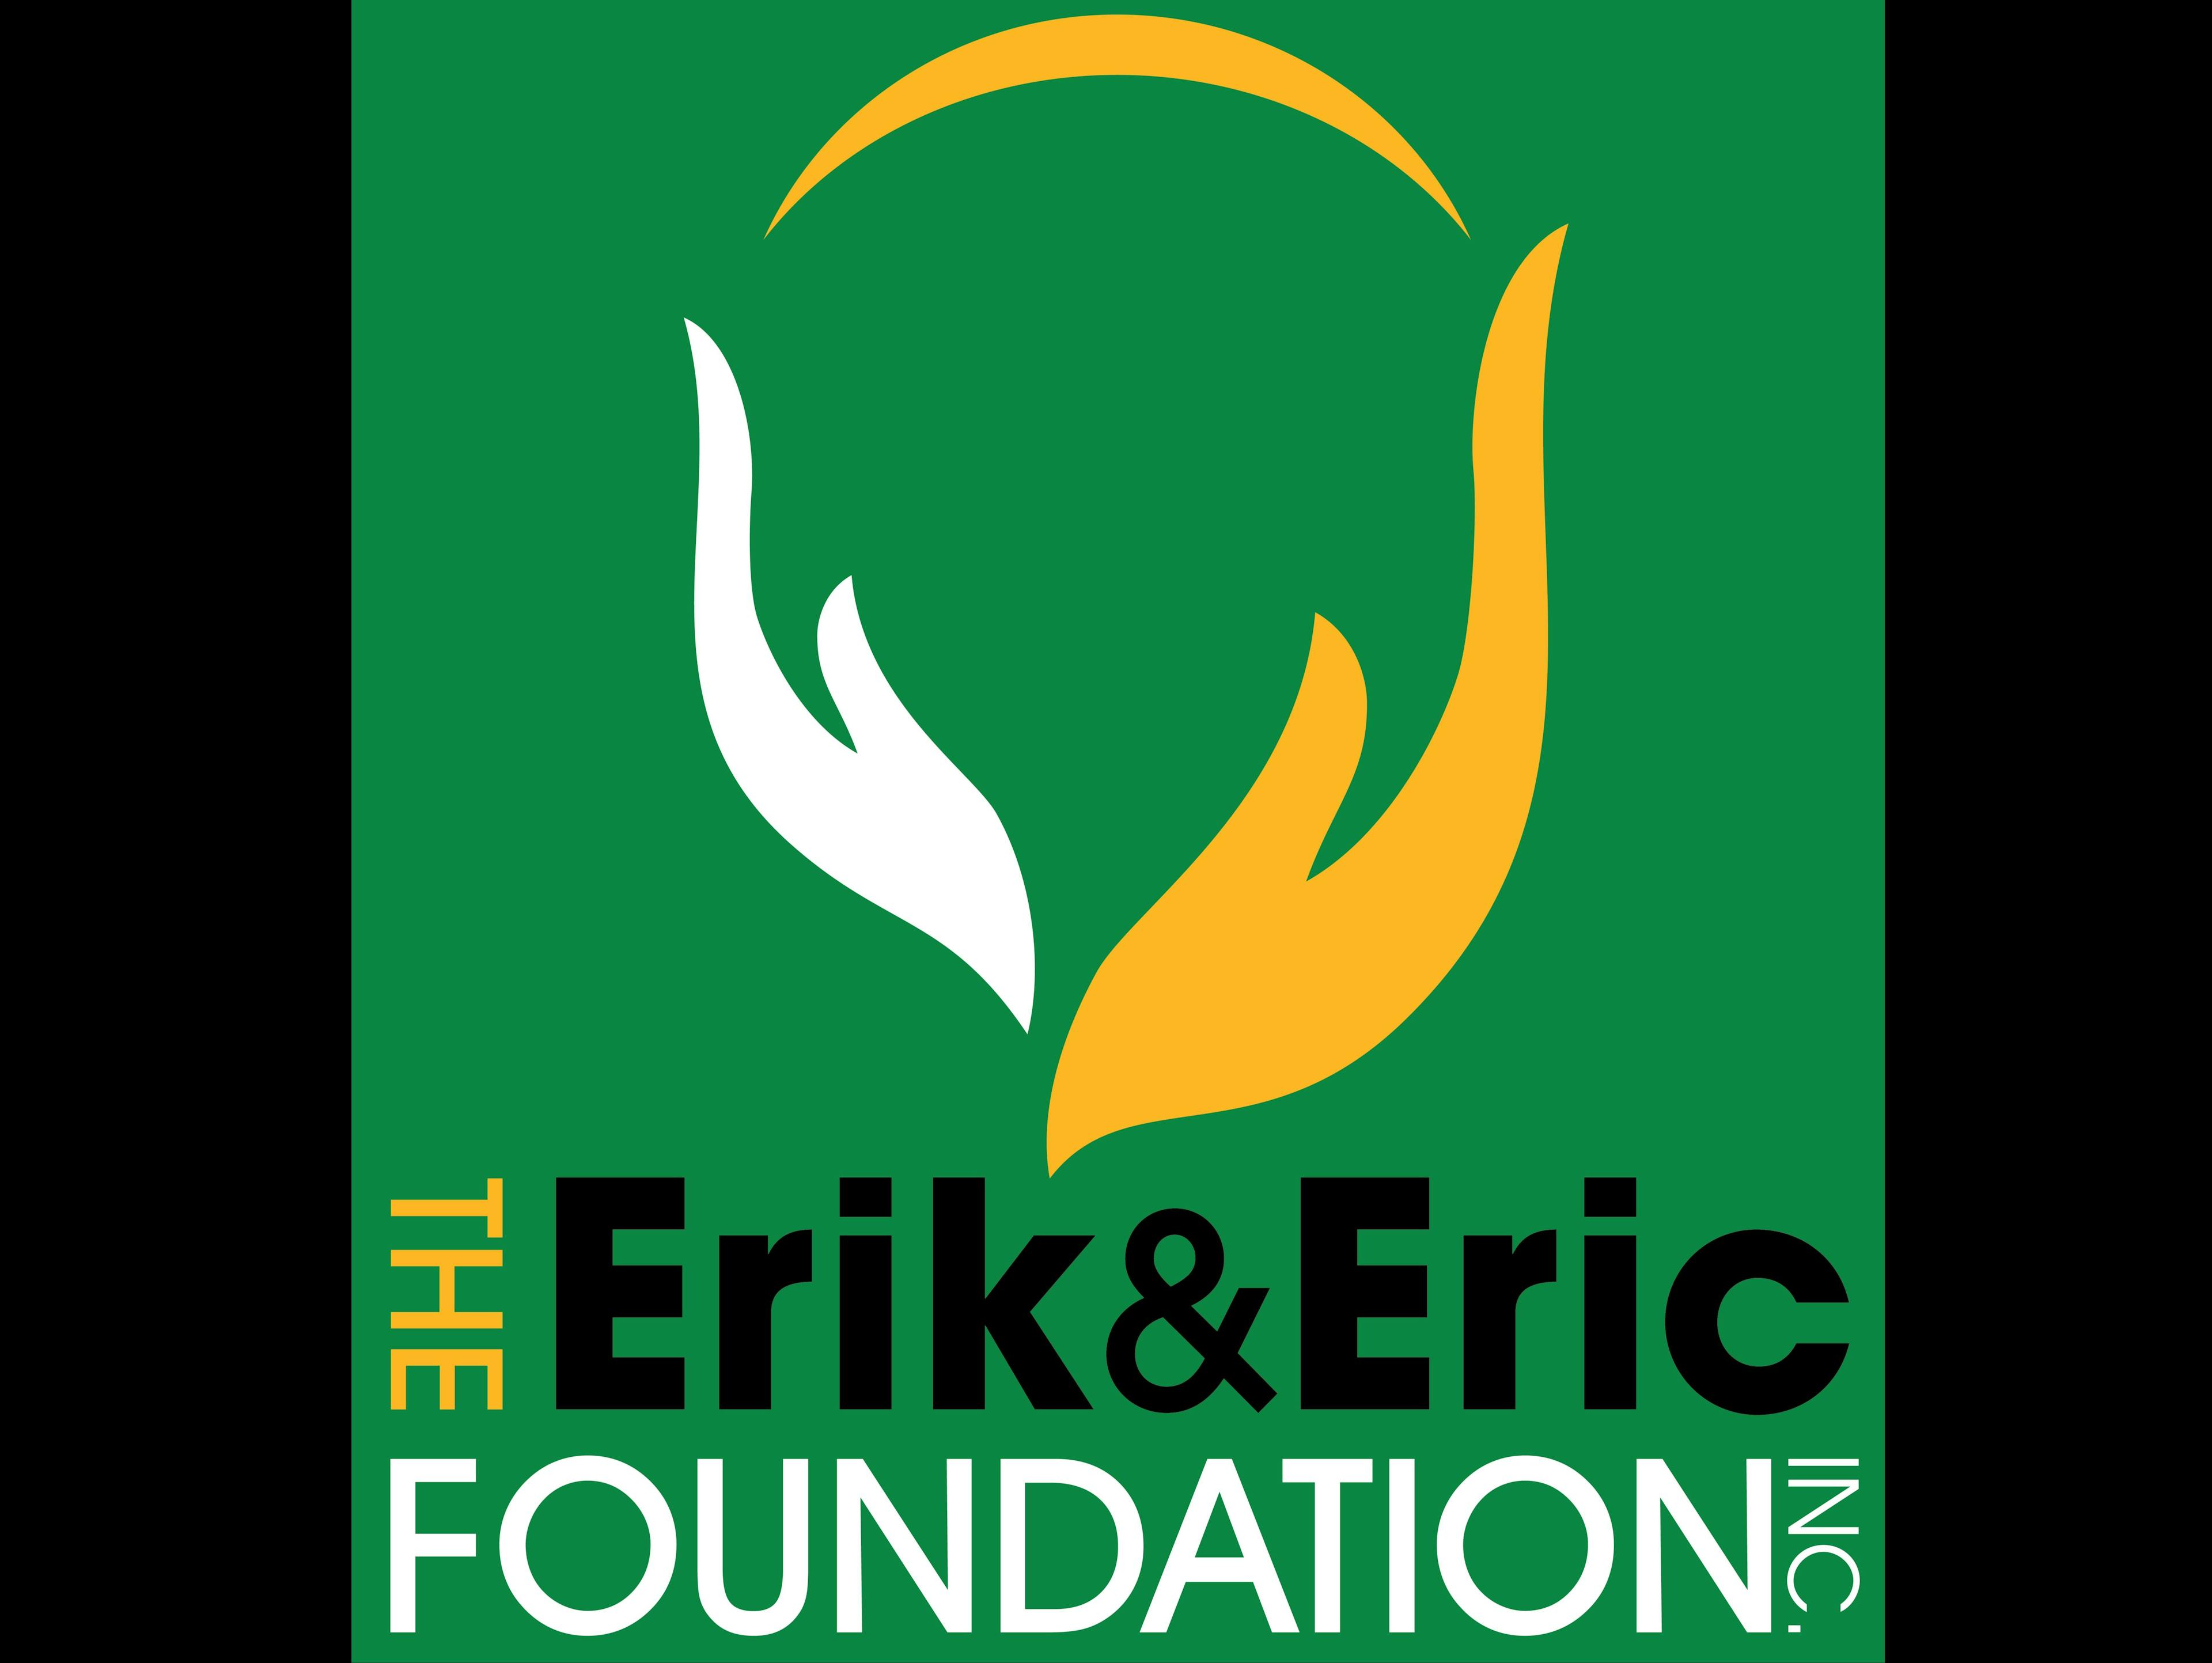 Erik&Eric Foundation Scholarship Fund